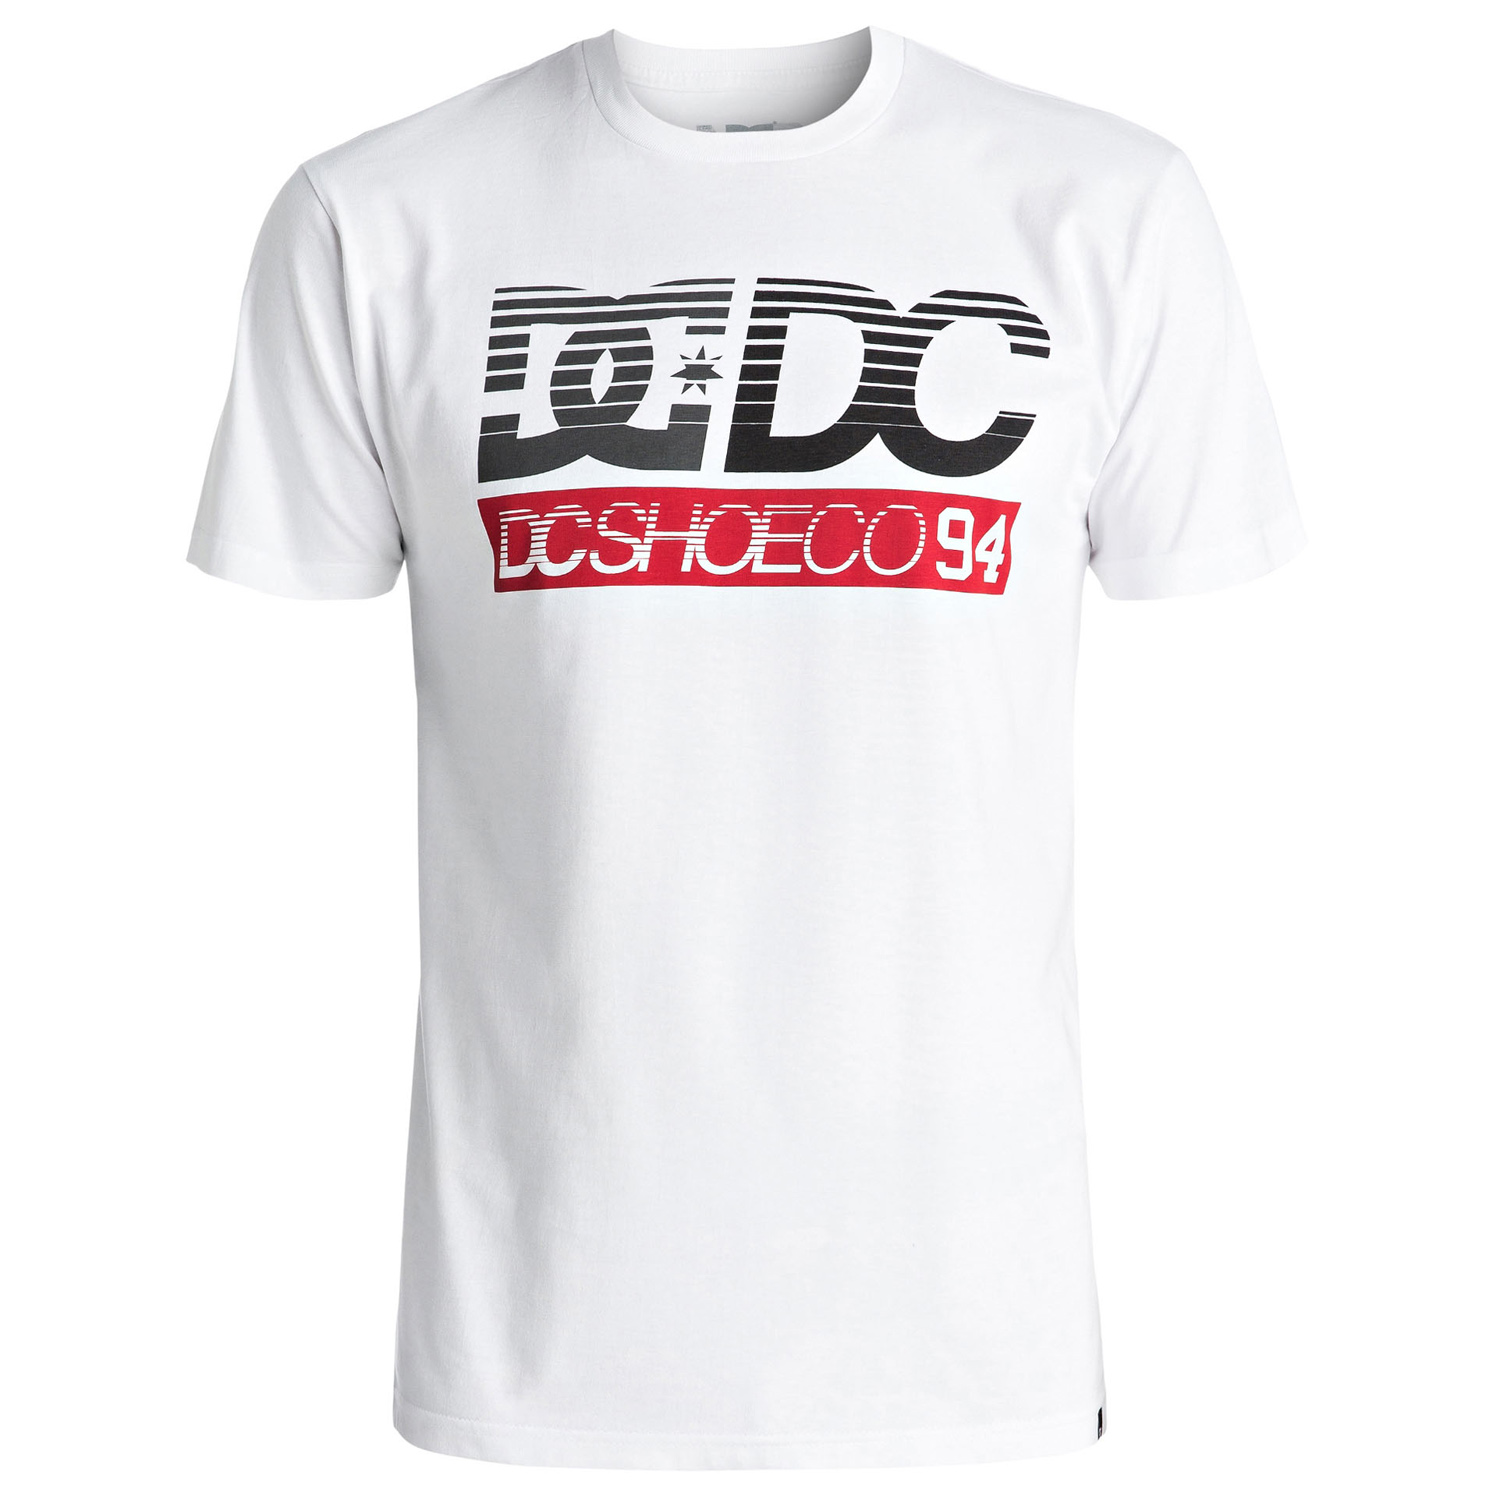 DC T-Shirt Legendz 94 Schneeweiß